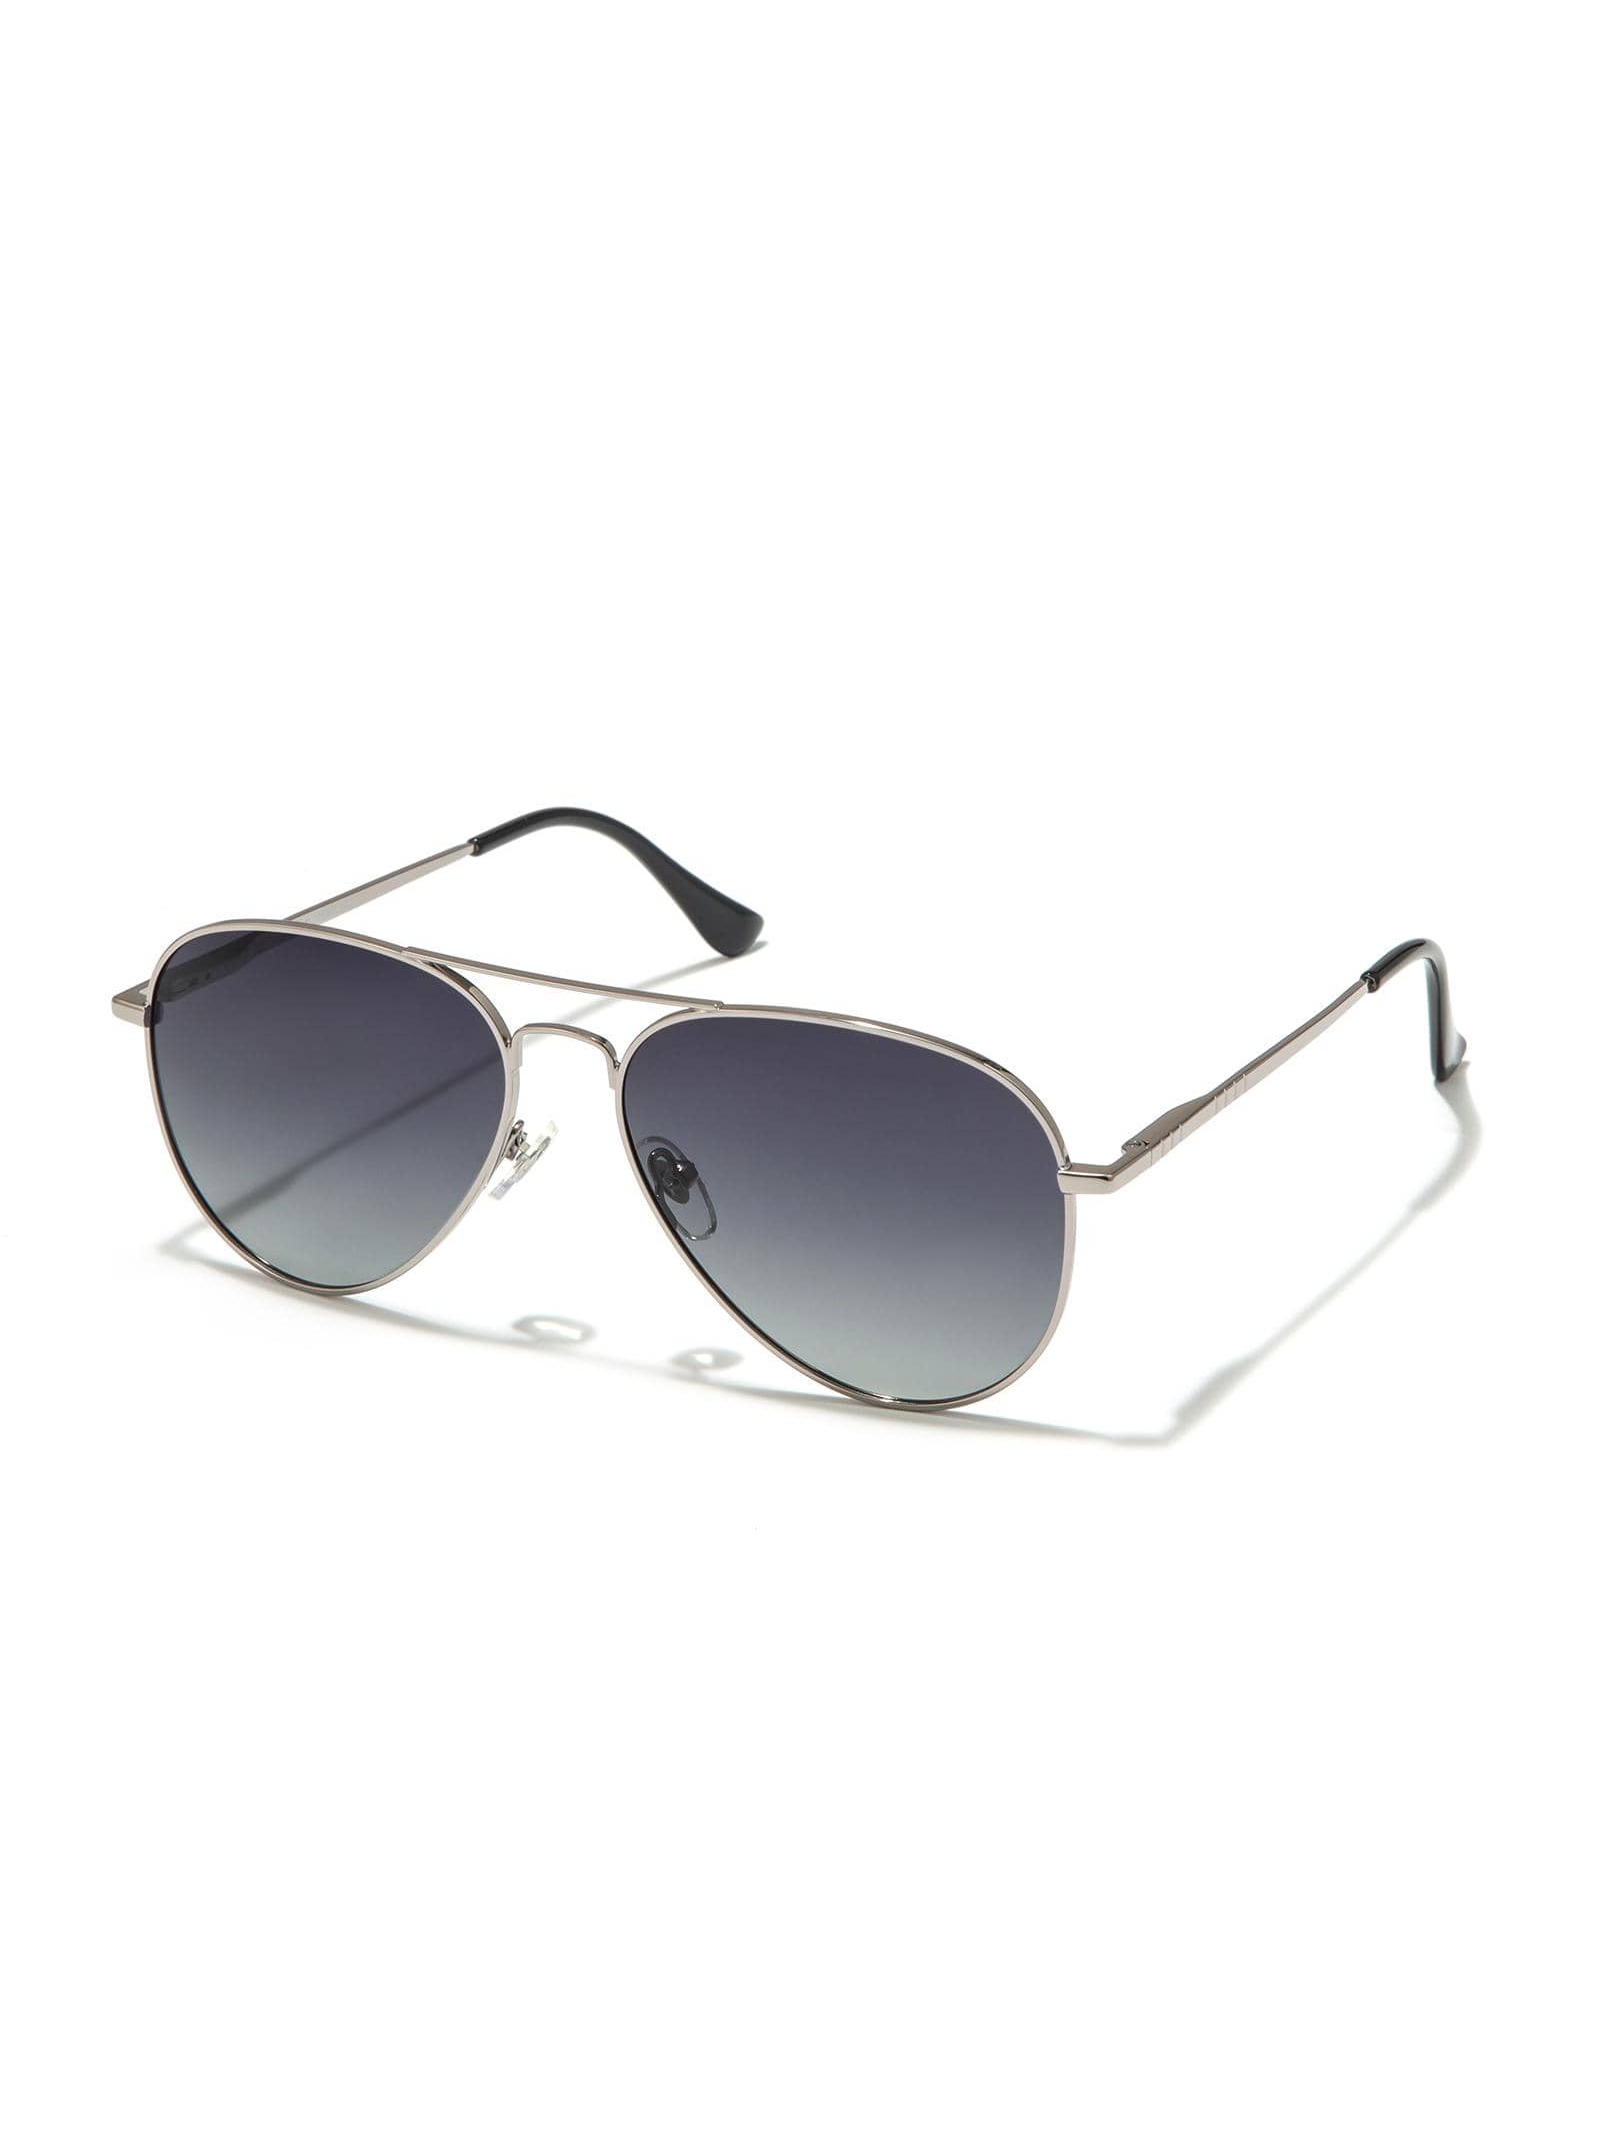 Солнцезащитные очки-авиаторы Veda Tinda для женщин и мужчин солнцезащитные очки emporio armani овальные оправа пластик зеркальные для мужчин серый